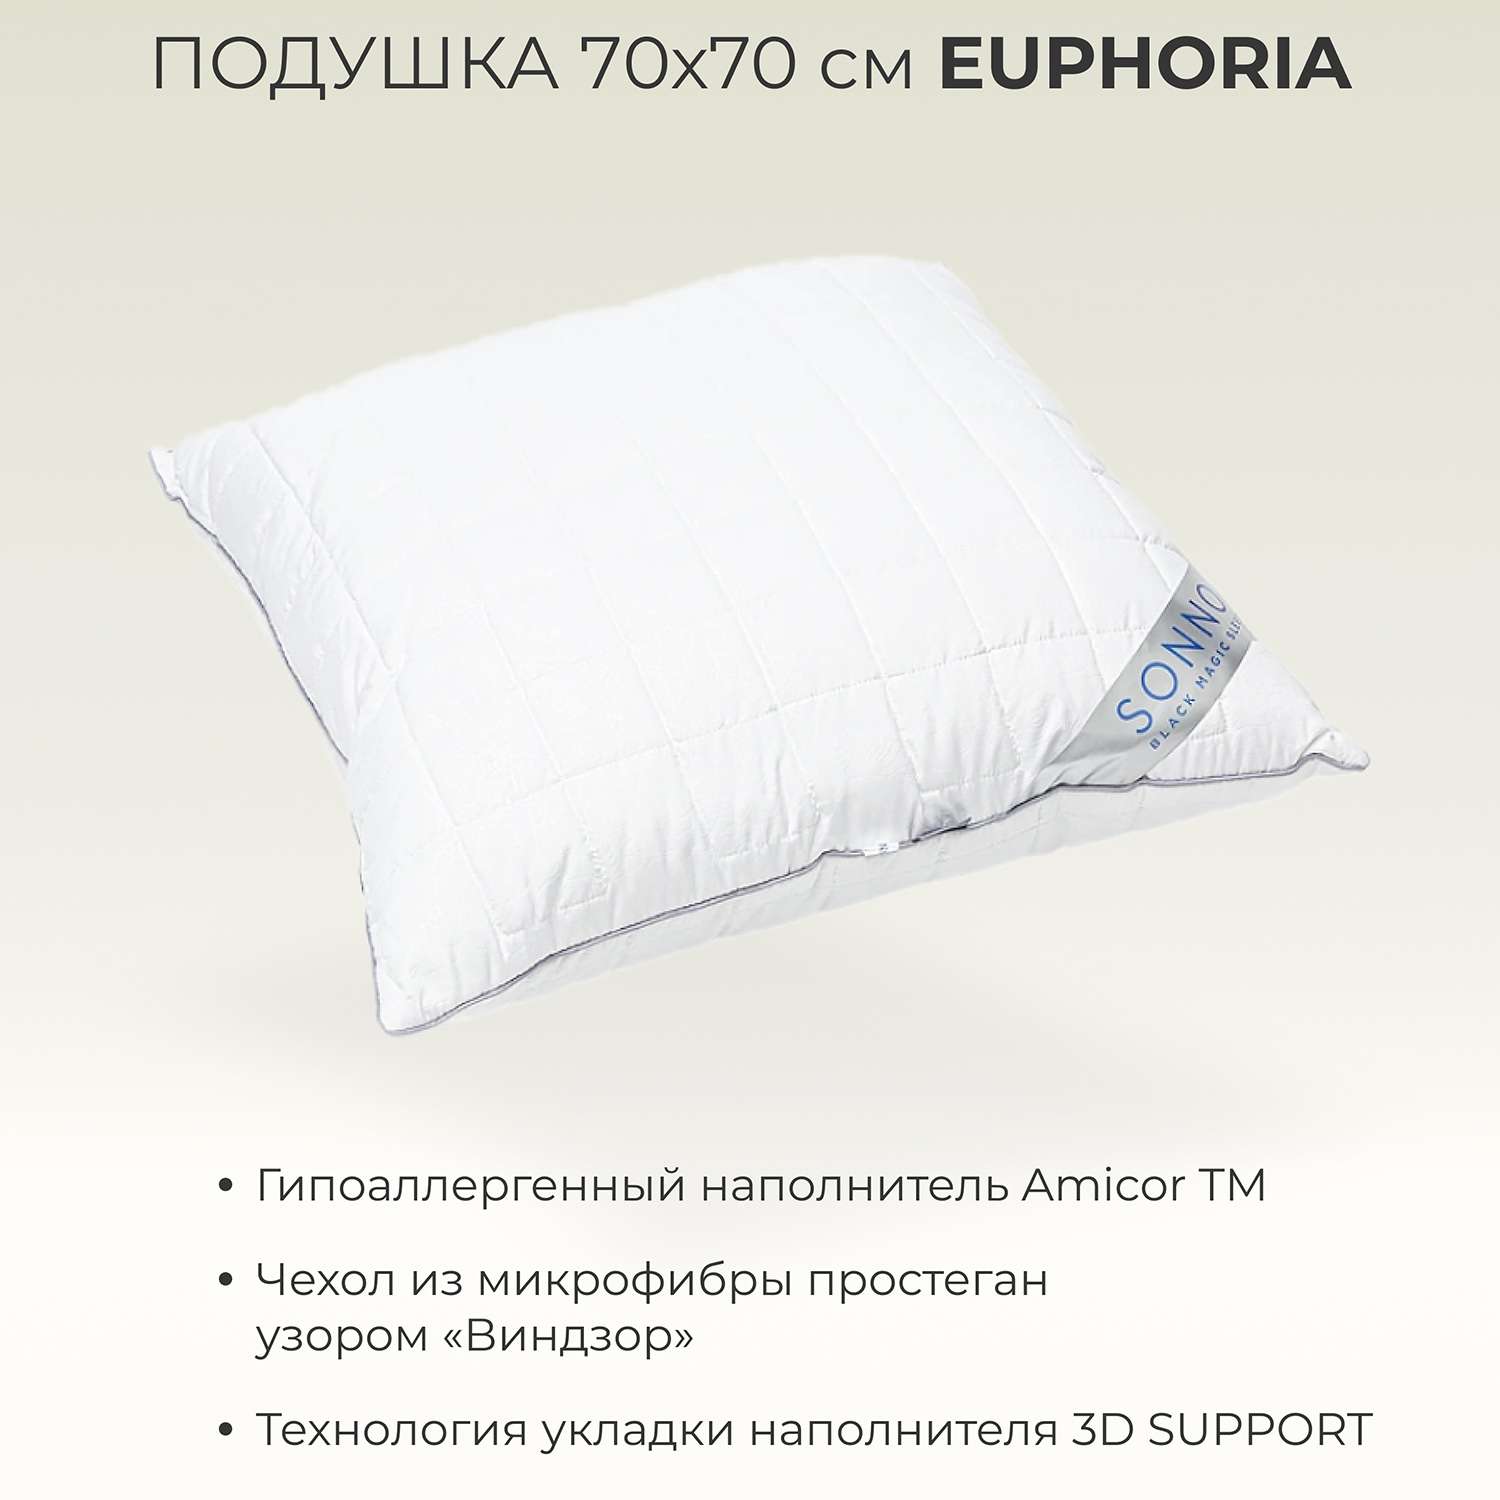 Подушка SONNO EUPHORIA 70x70 см гипоаллергенный наполнитель Amicor TM - фото 2